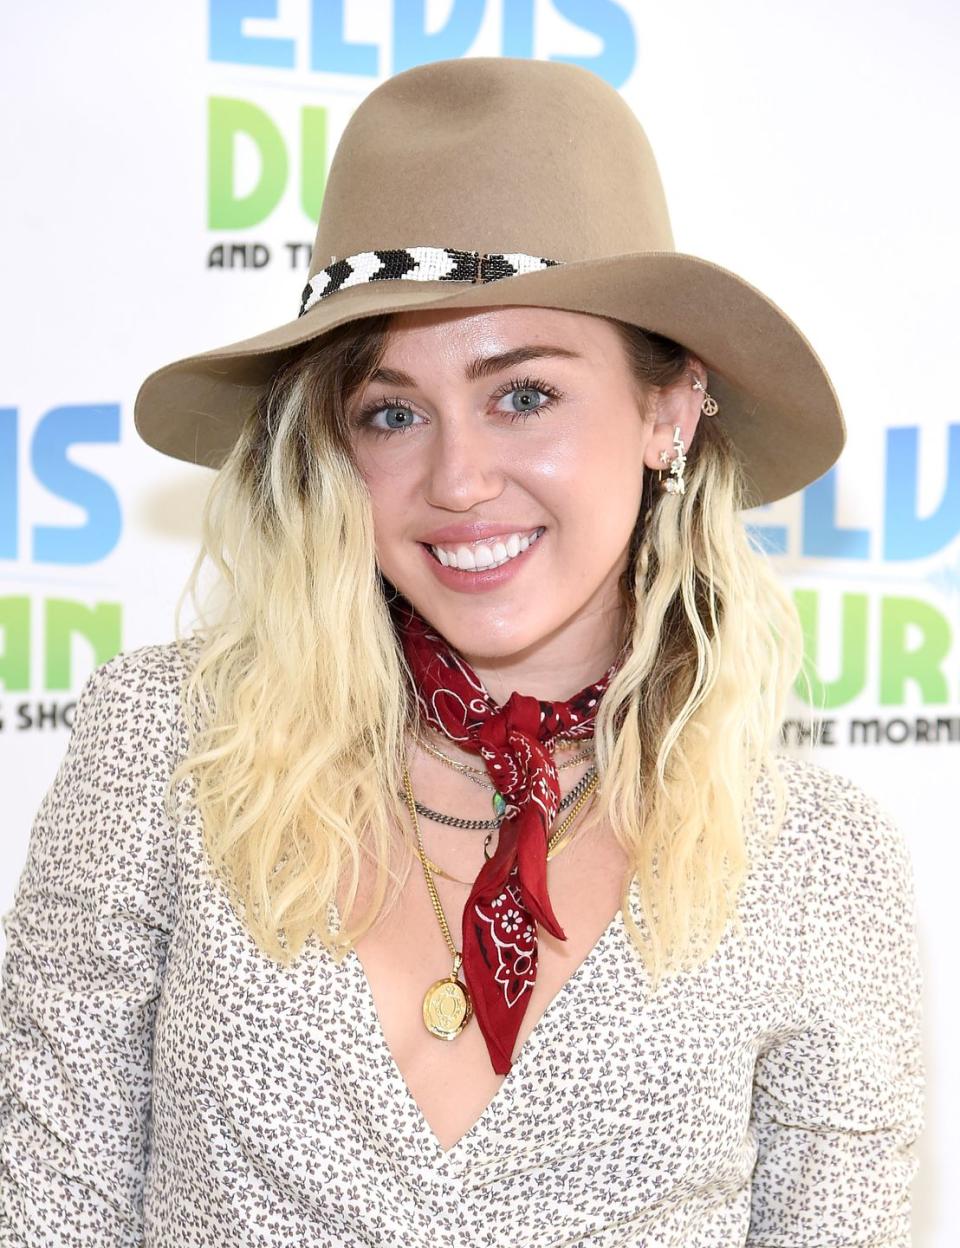 Miley Cyrus as Hannah Montana in 'Hannah Montana'